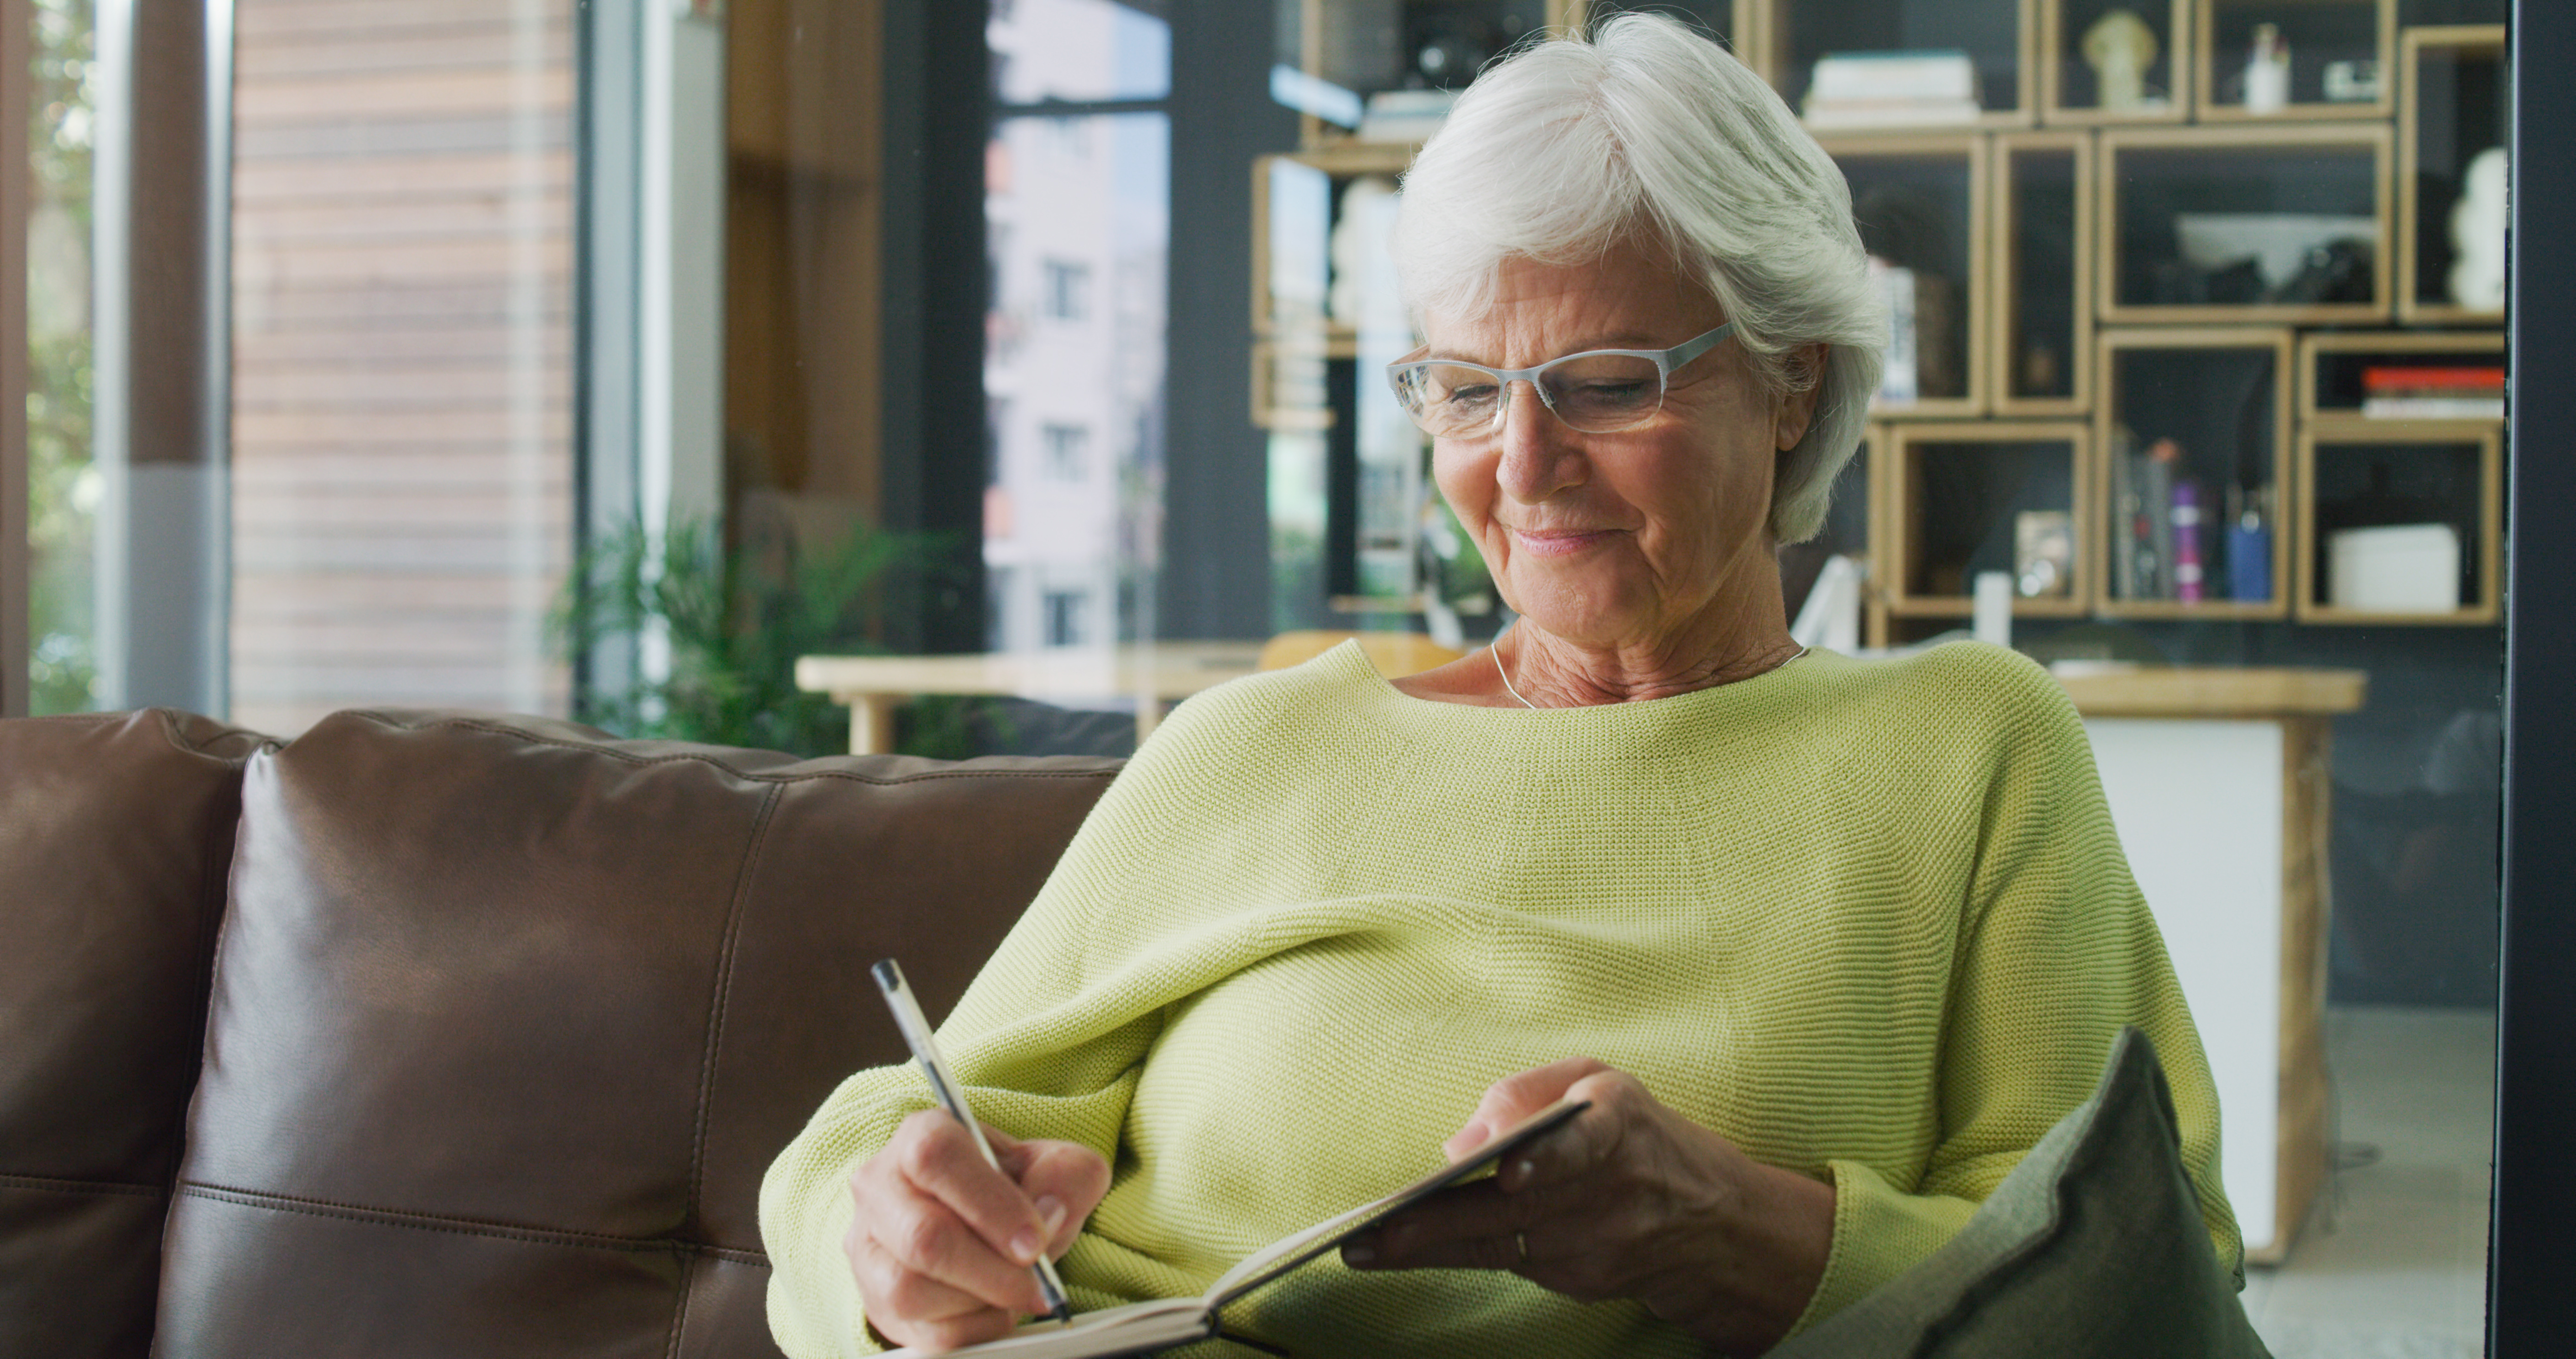 Aufnahme einer älteren Frau, die zu Hause in ein Tagebuch schreibt | Quelle: Getty Images